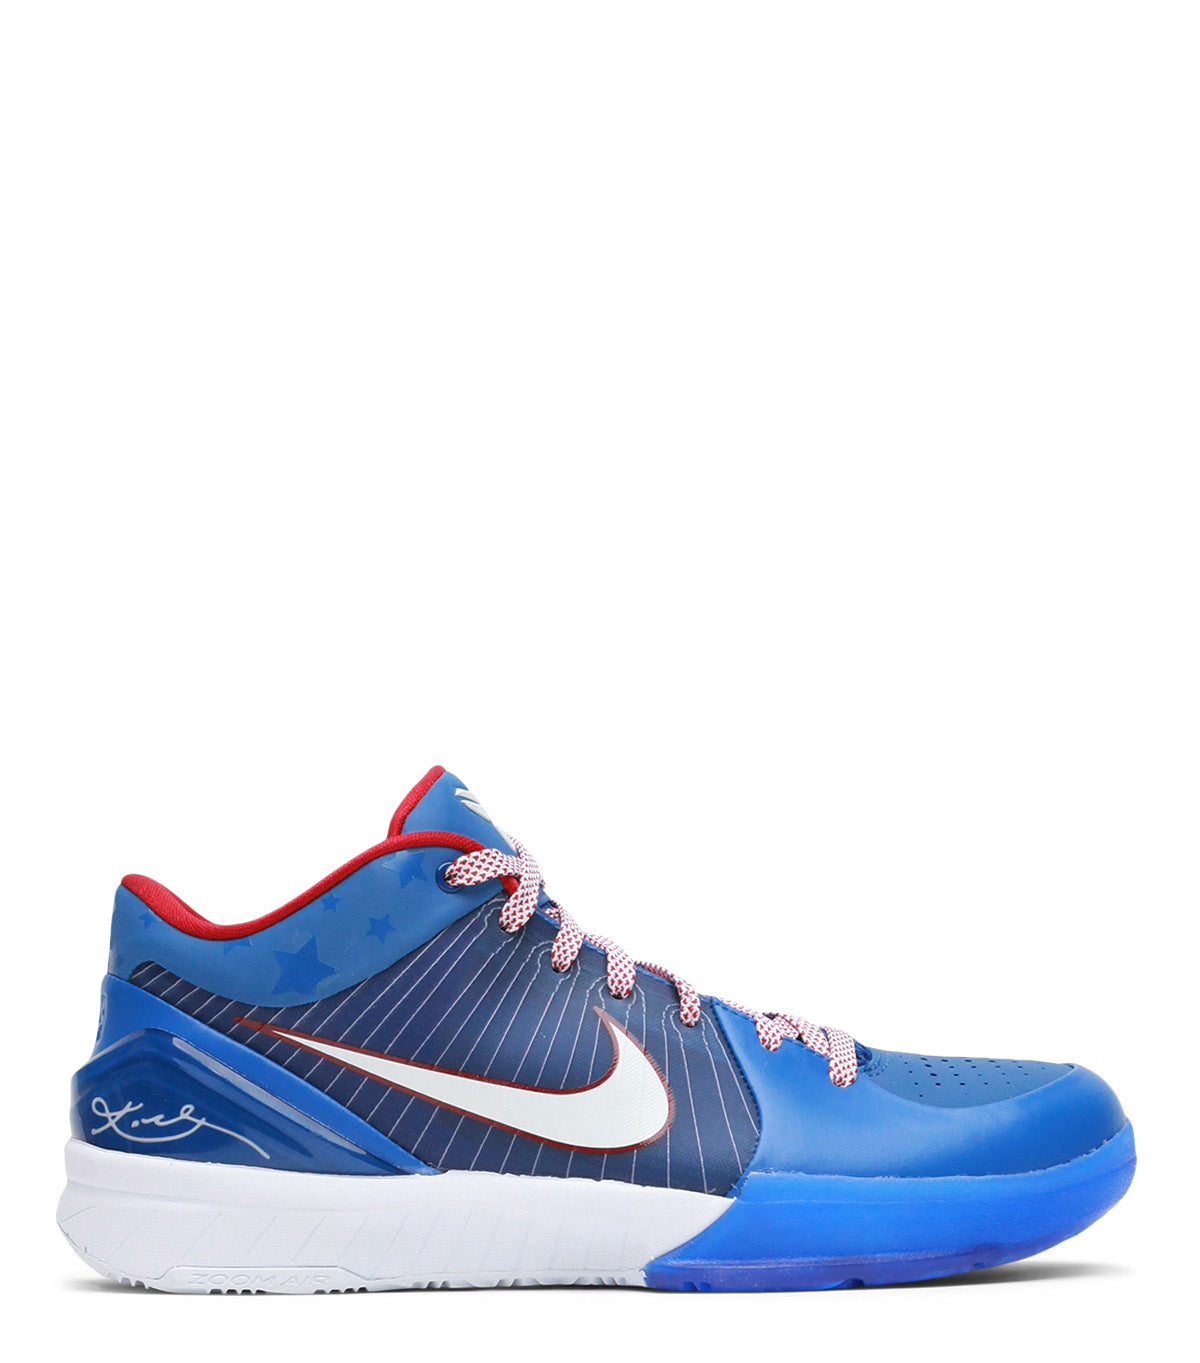 04.13.24 Nike Kobe 4 Protro Blue Red